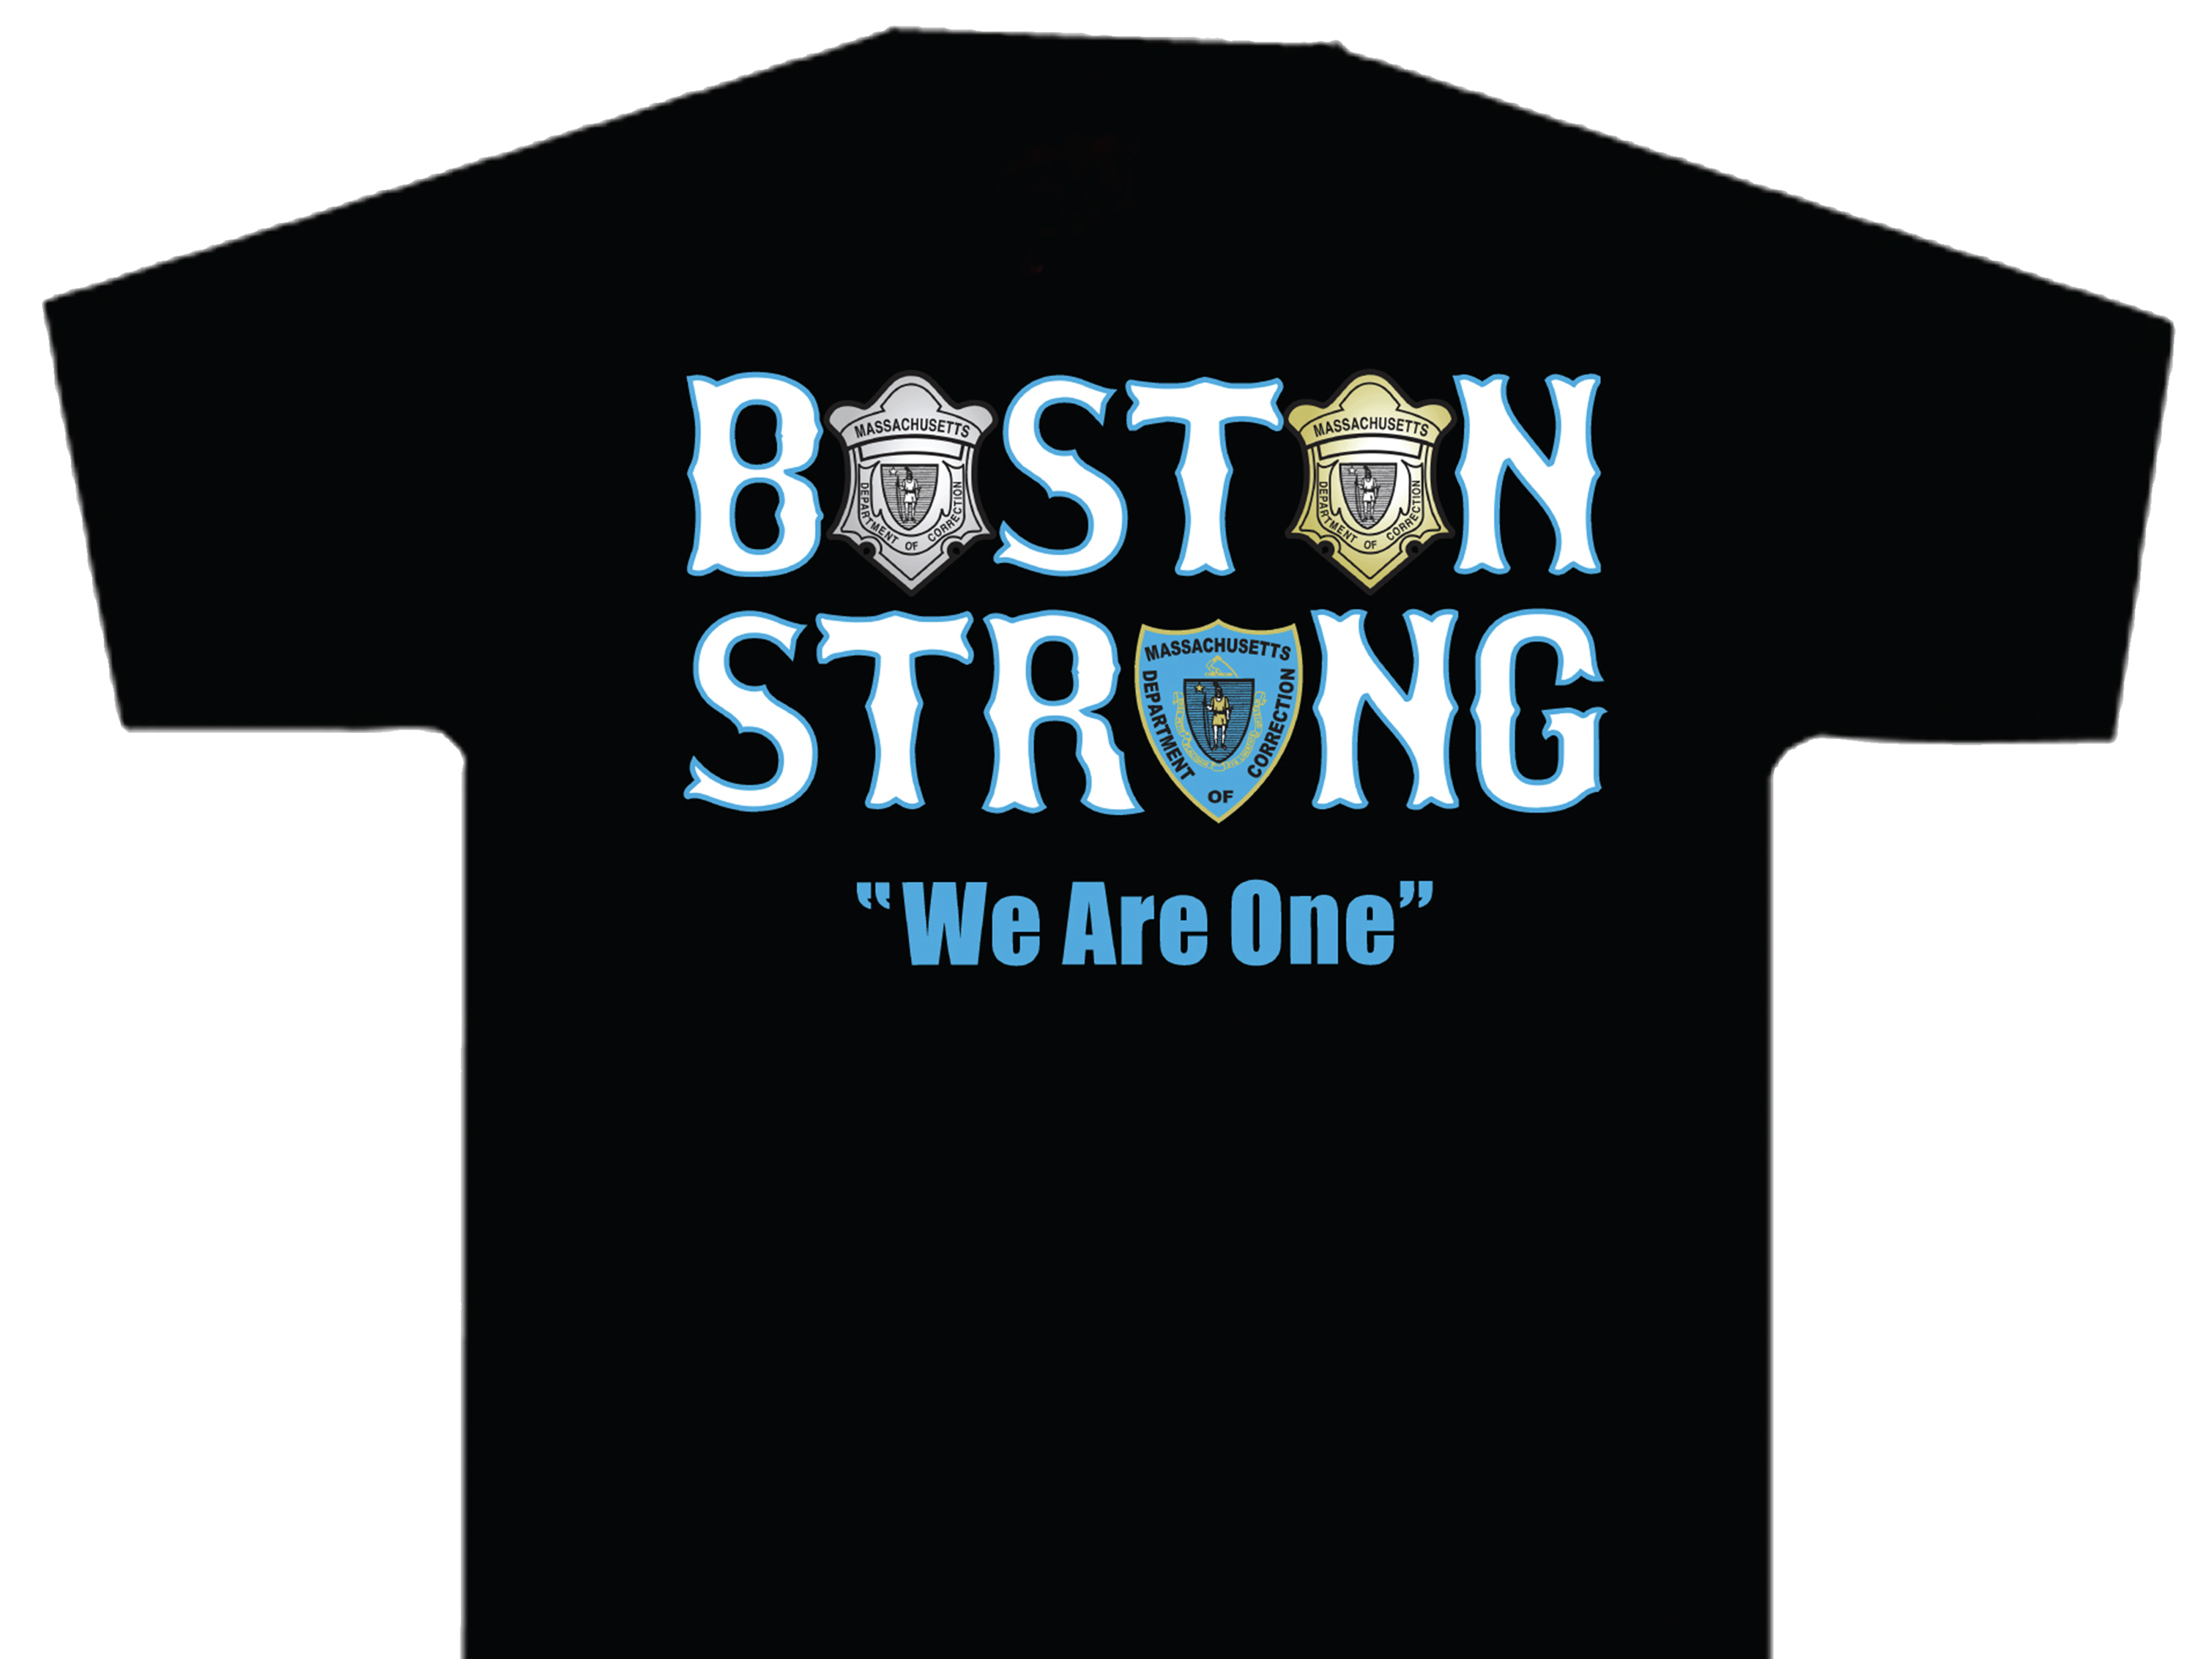 https://0901.nccdn.net/4_2/000/000/023/130/boston-strong-we-are-one-silk-screen-shirt.png